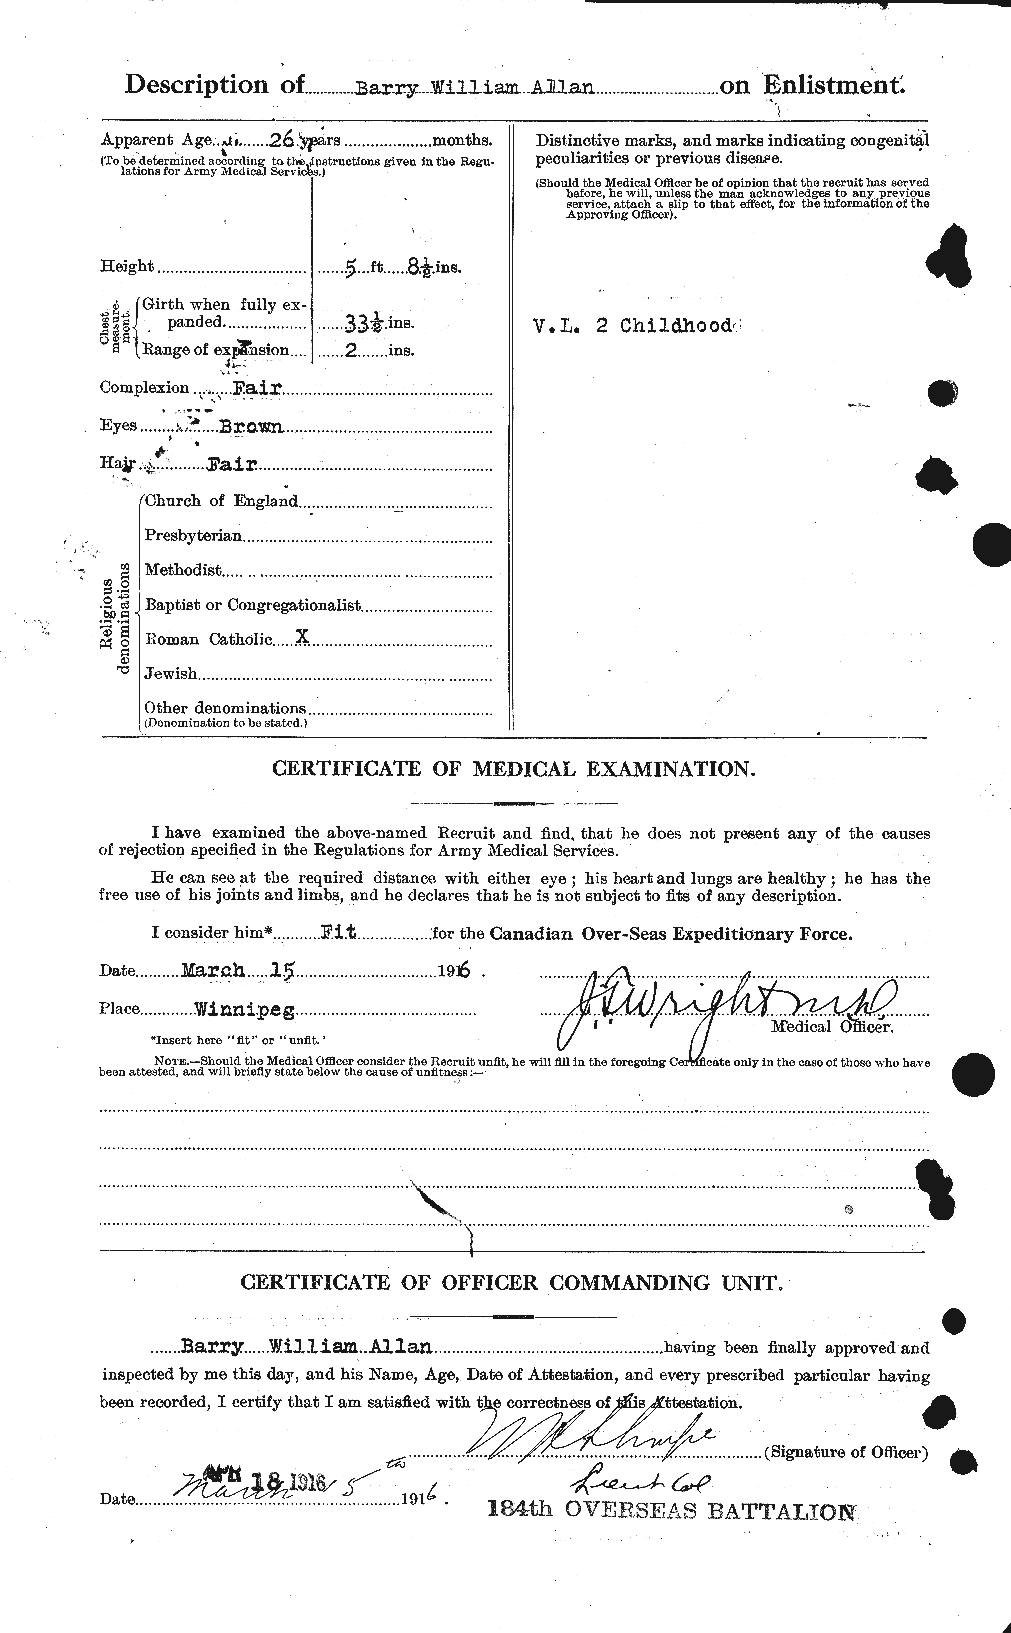 Dossiers du Personnel de la Première Guerre mondiale - CEC 222052b